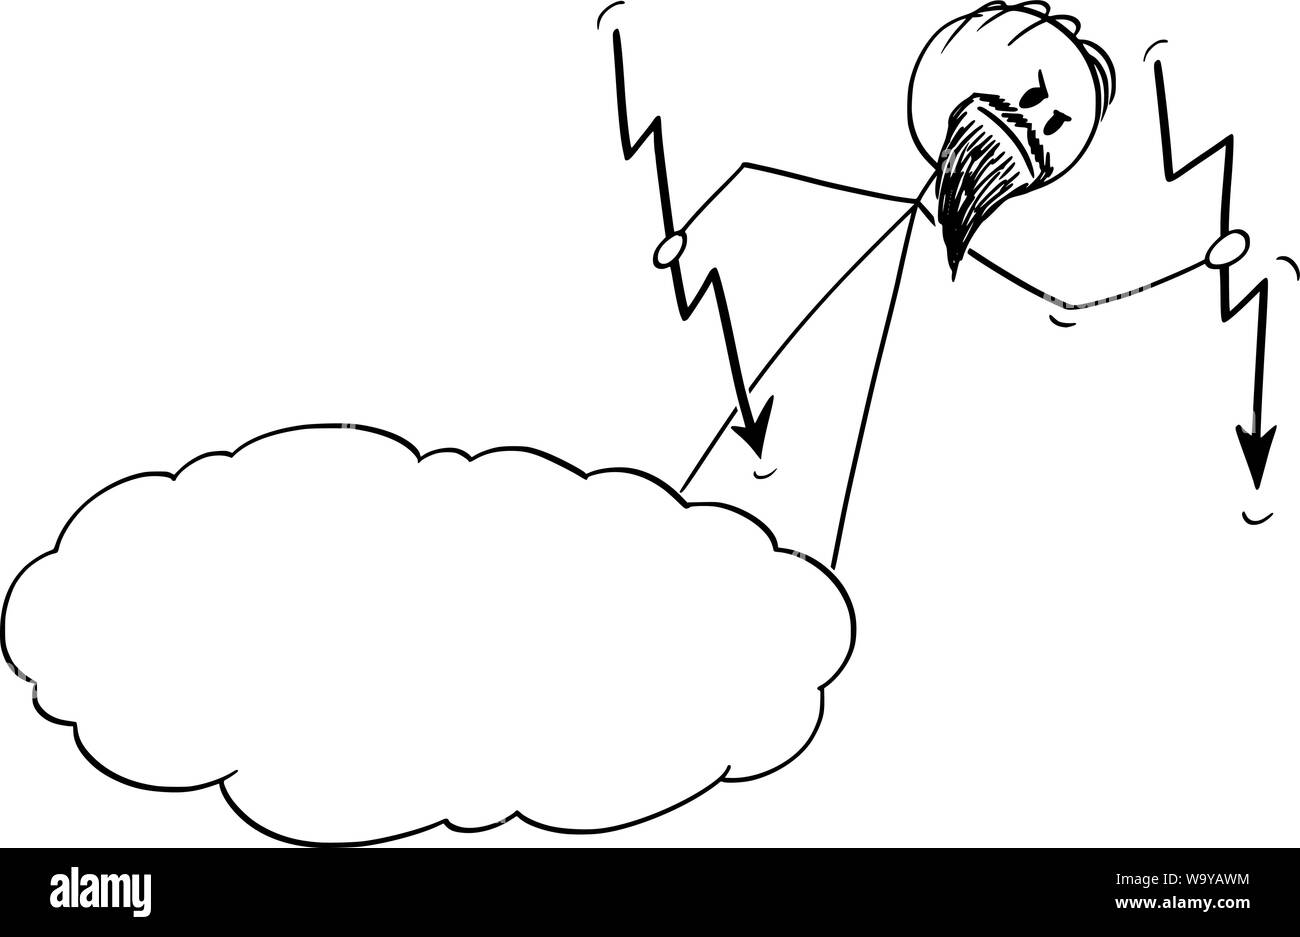 Vector cartoon stick figura disegno illustrazione concettuale di Dio adirato per colata o gettare i fulmini dal cielo o cloud. Illustrazione Vettoriale